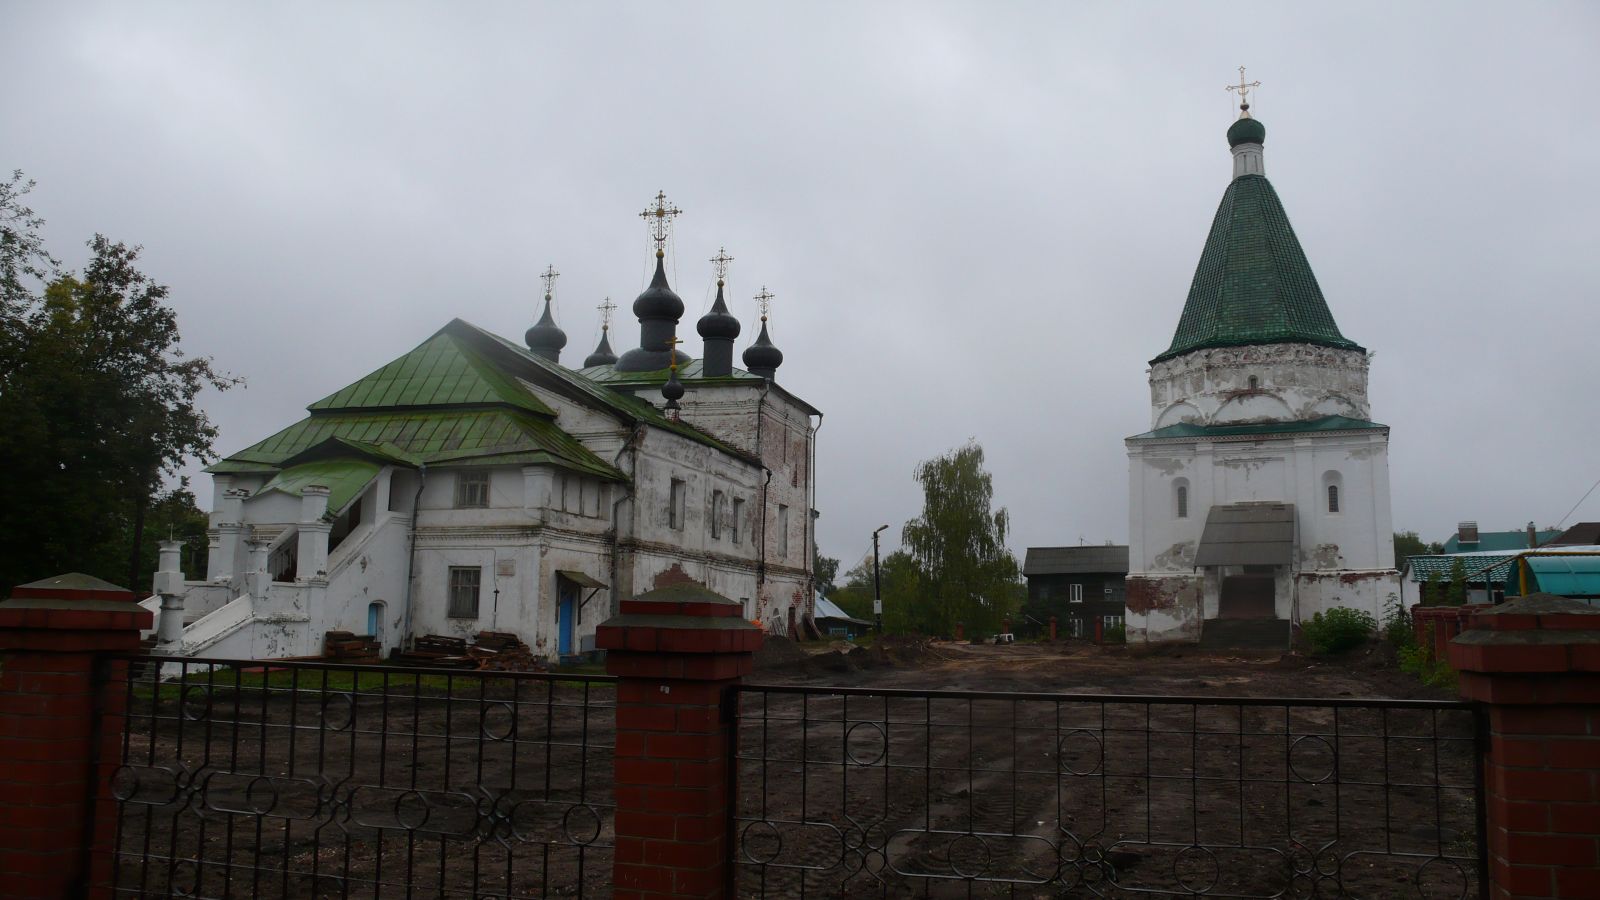 Общий вид на Покровскую и Никольскую церкви бывшего Покровского монастыря в Балахне. Фото А.И. Давыдова. Сентябрь 2011 г.